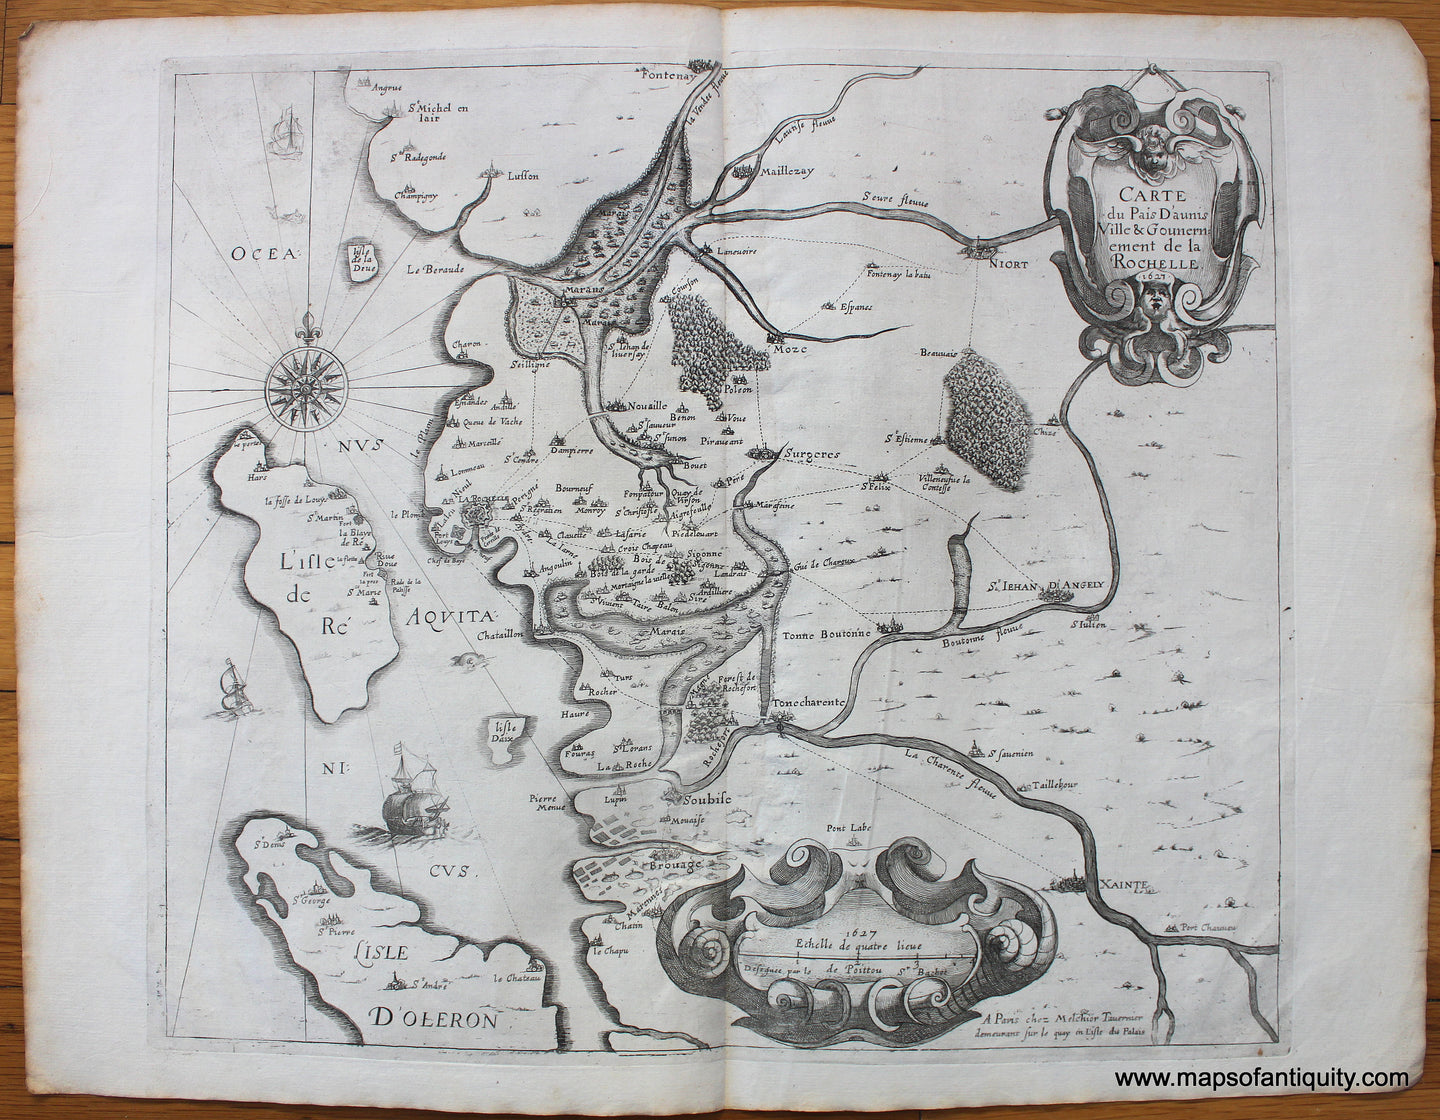 1627 - Carte du Pais D'aunis Ville & Gounernement de la Rochelle - Antique Map